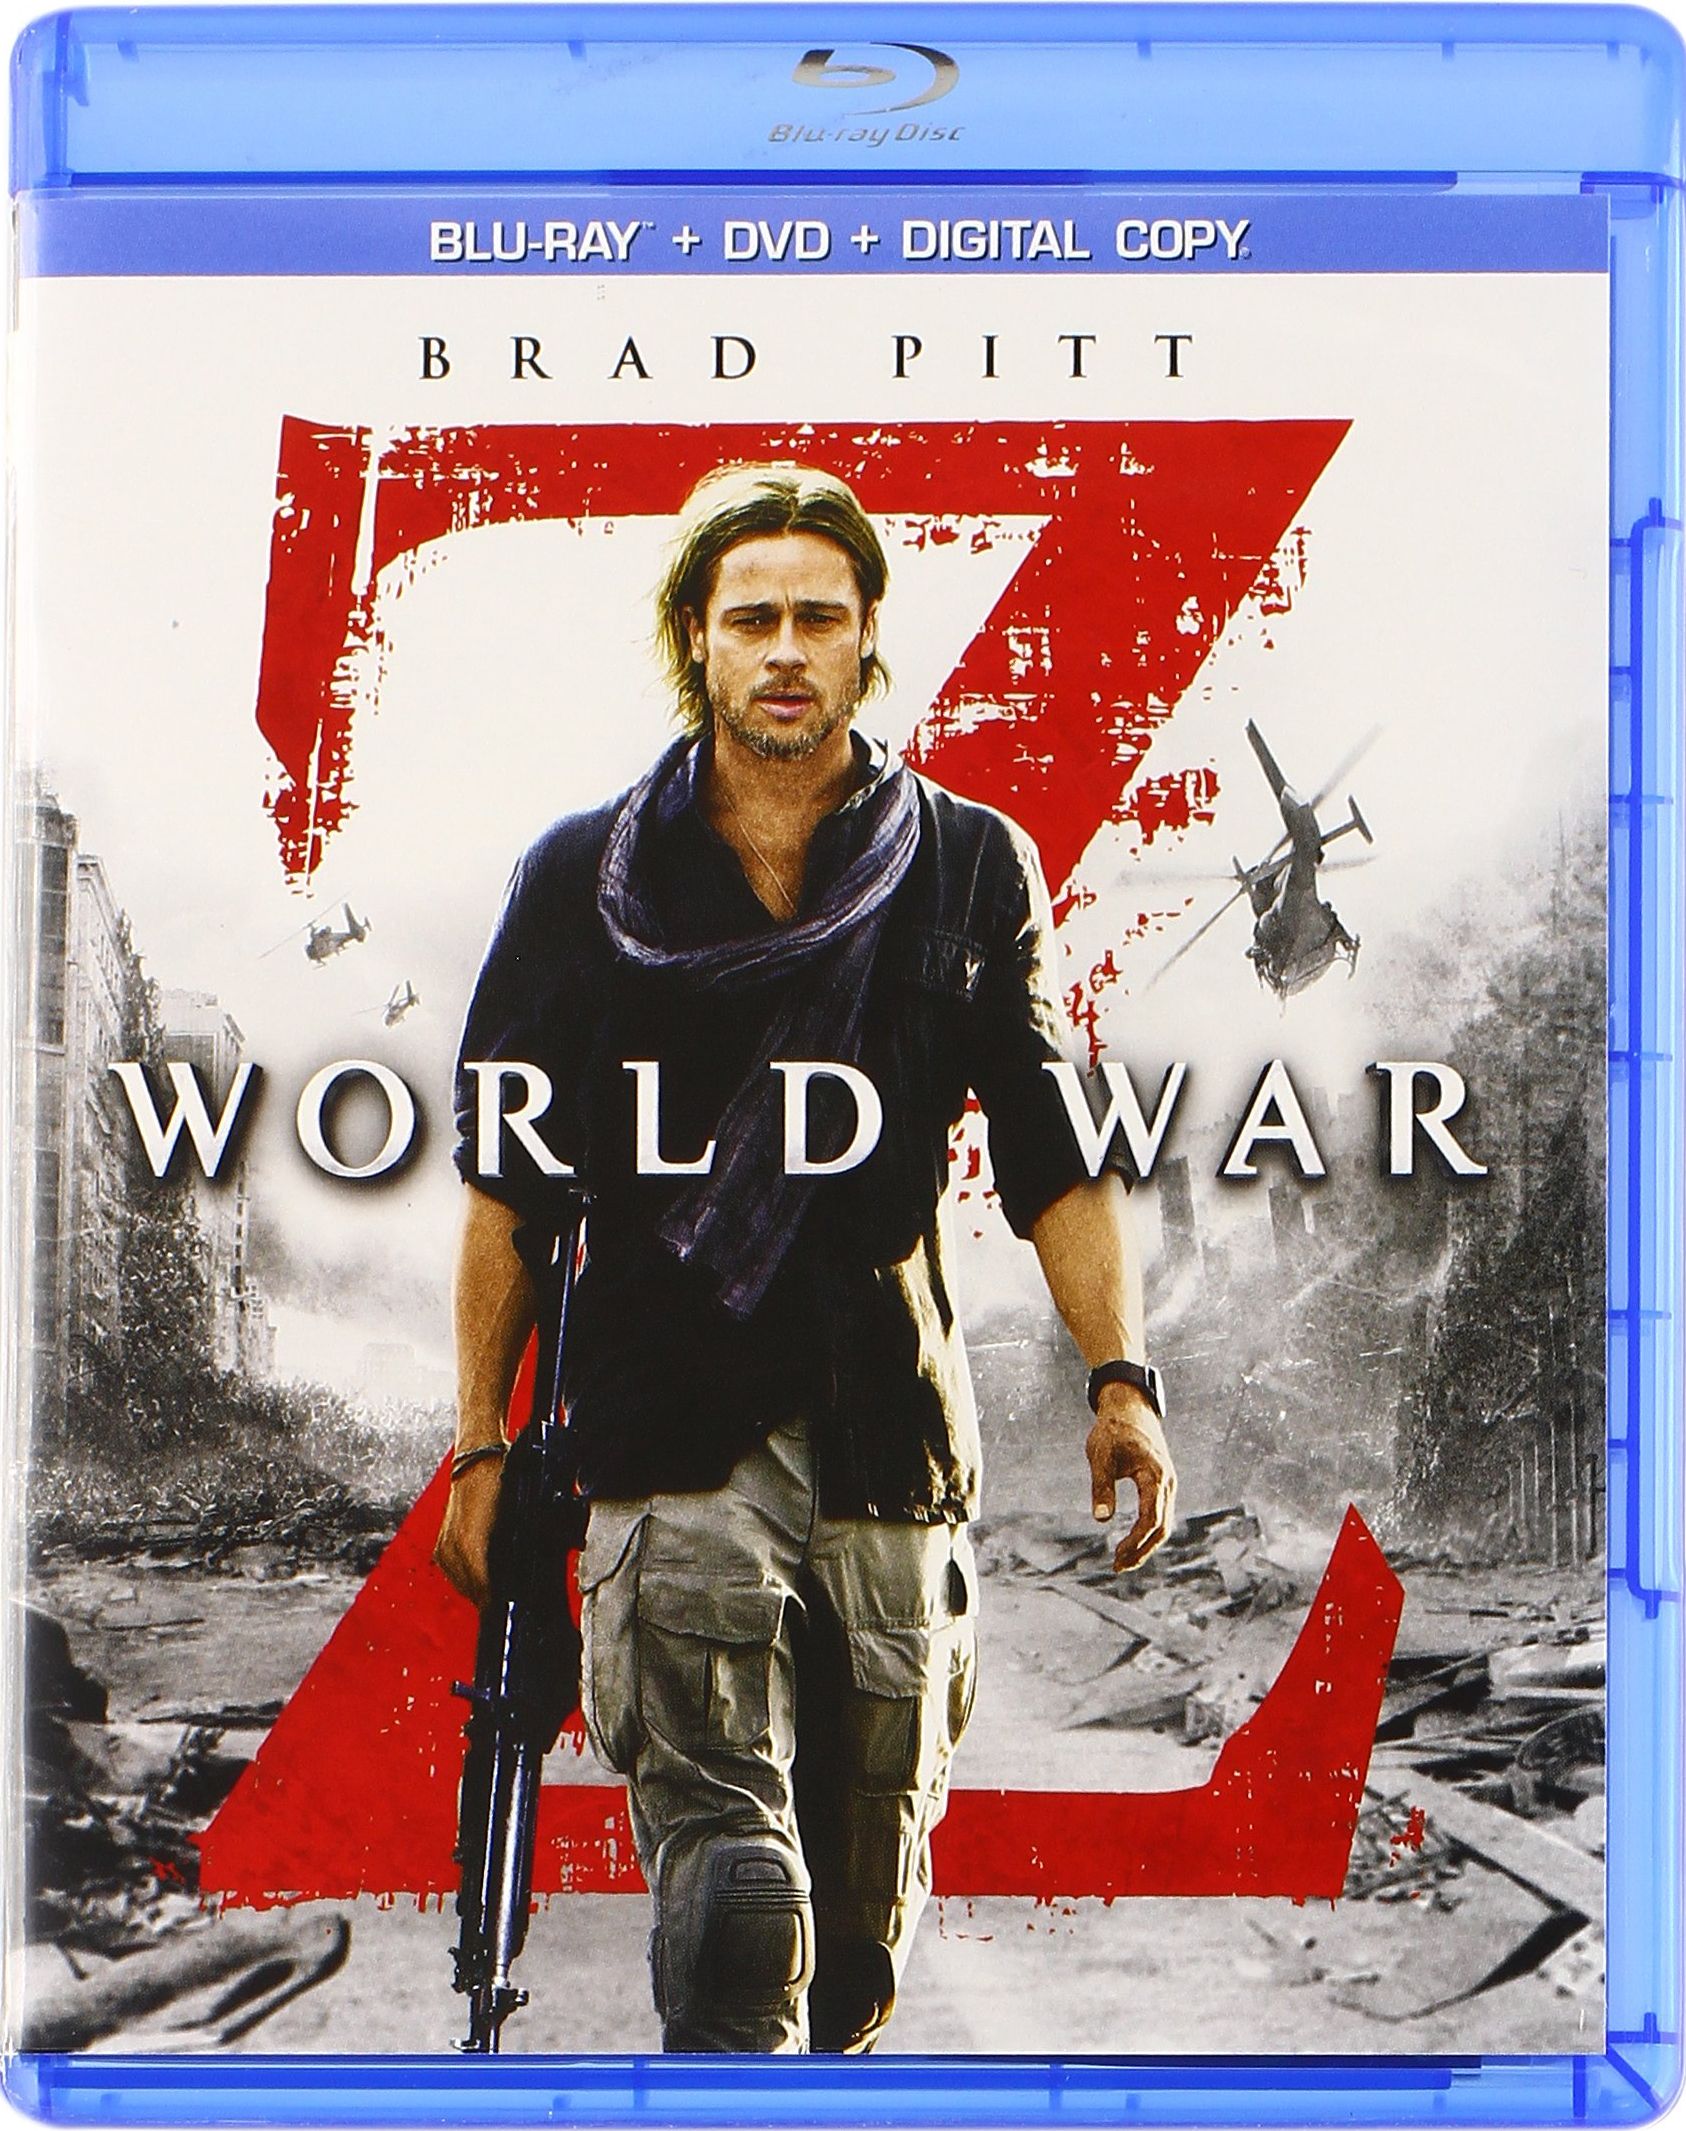 World War Z Dvd Release Date September 17 13